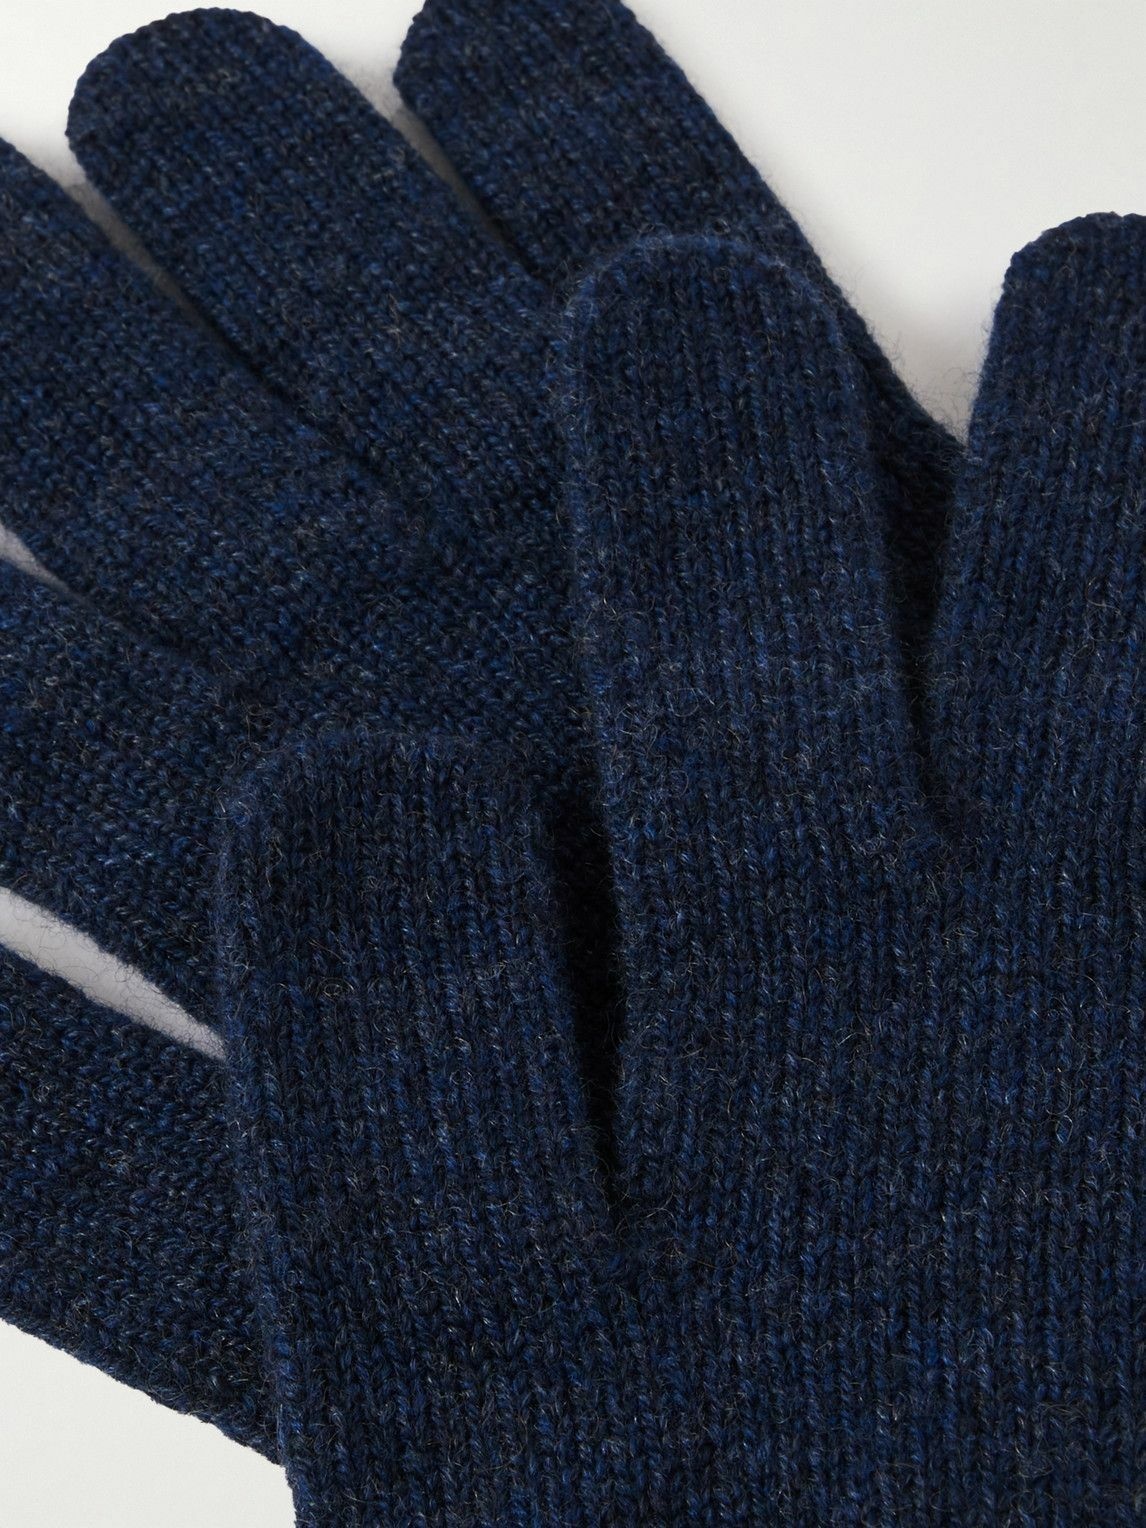 William Lockie - Cashmere Gloves